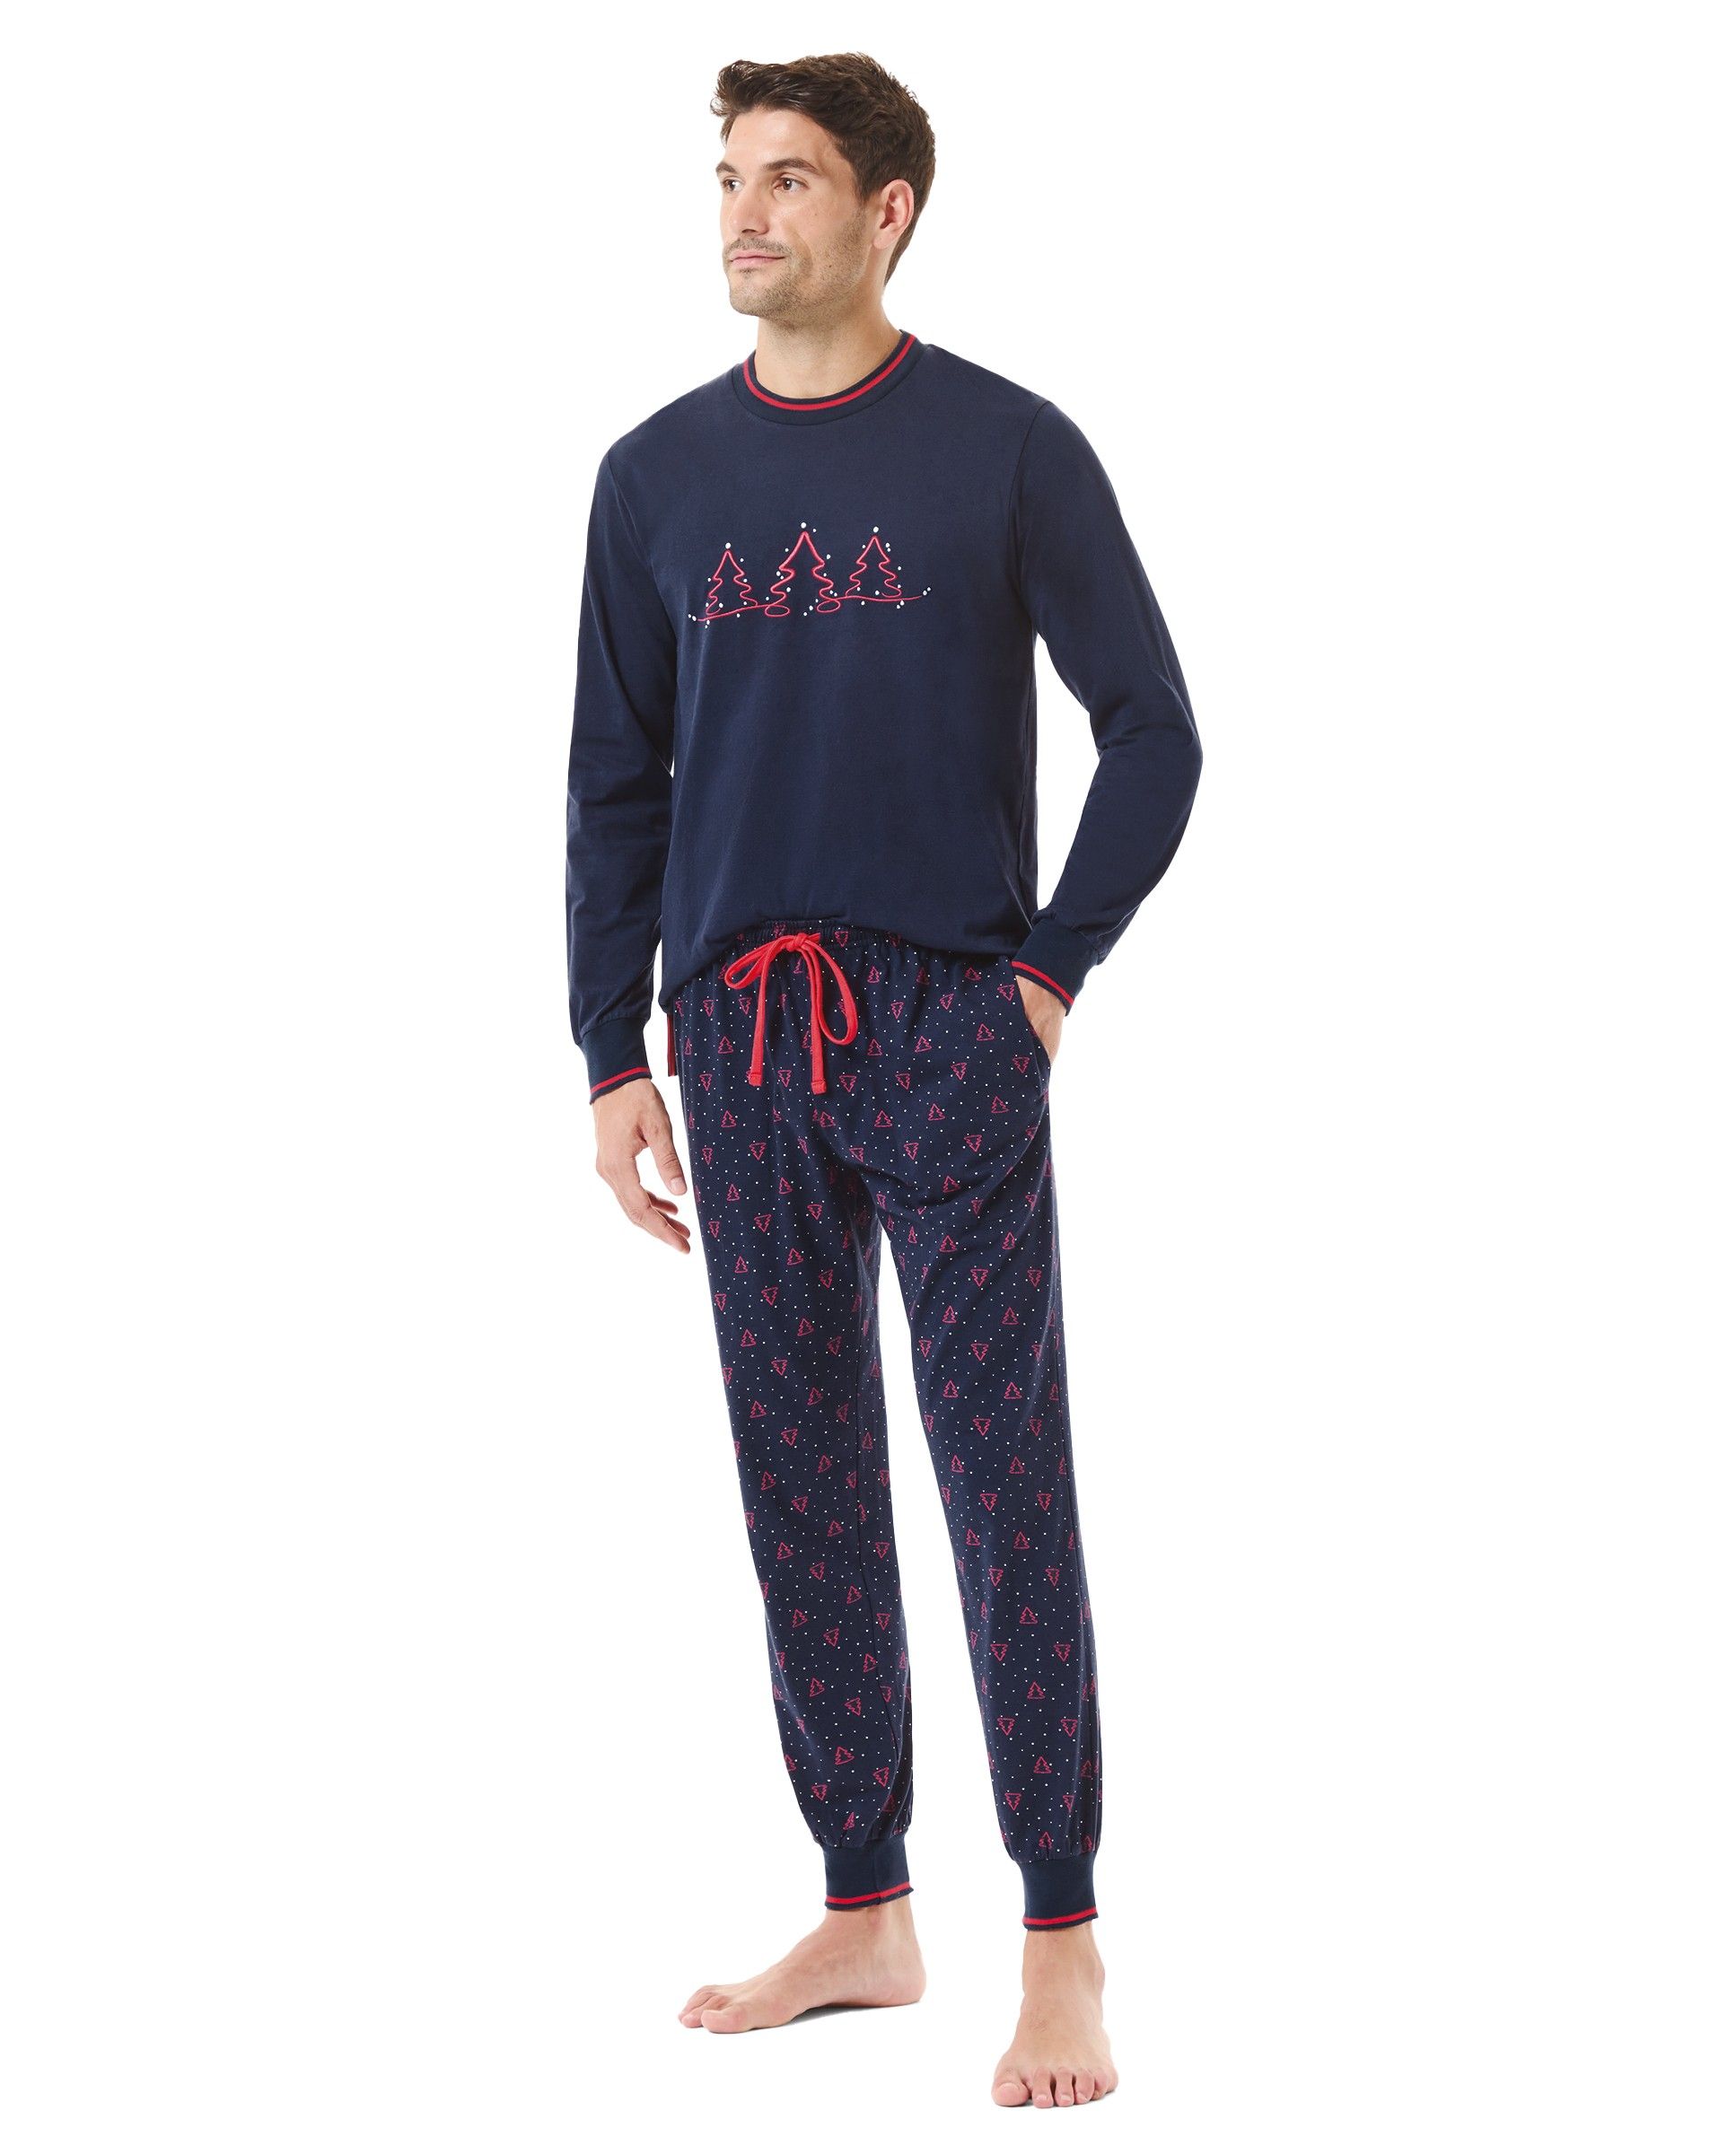 Hombre con pijama largo de motivos navideños en manga larga, chaquetilla cuello redondo con bordados y pantalón con bolsillos